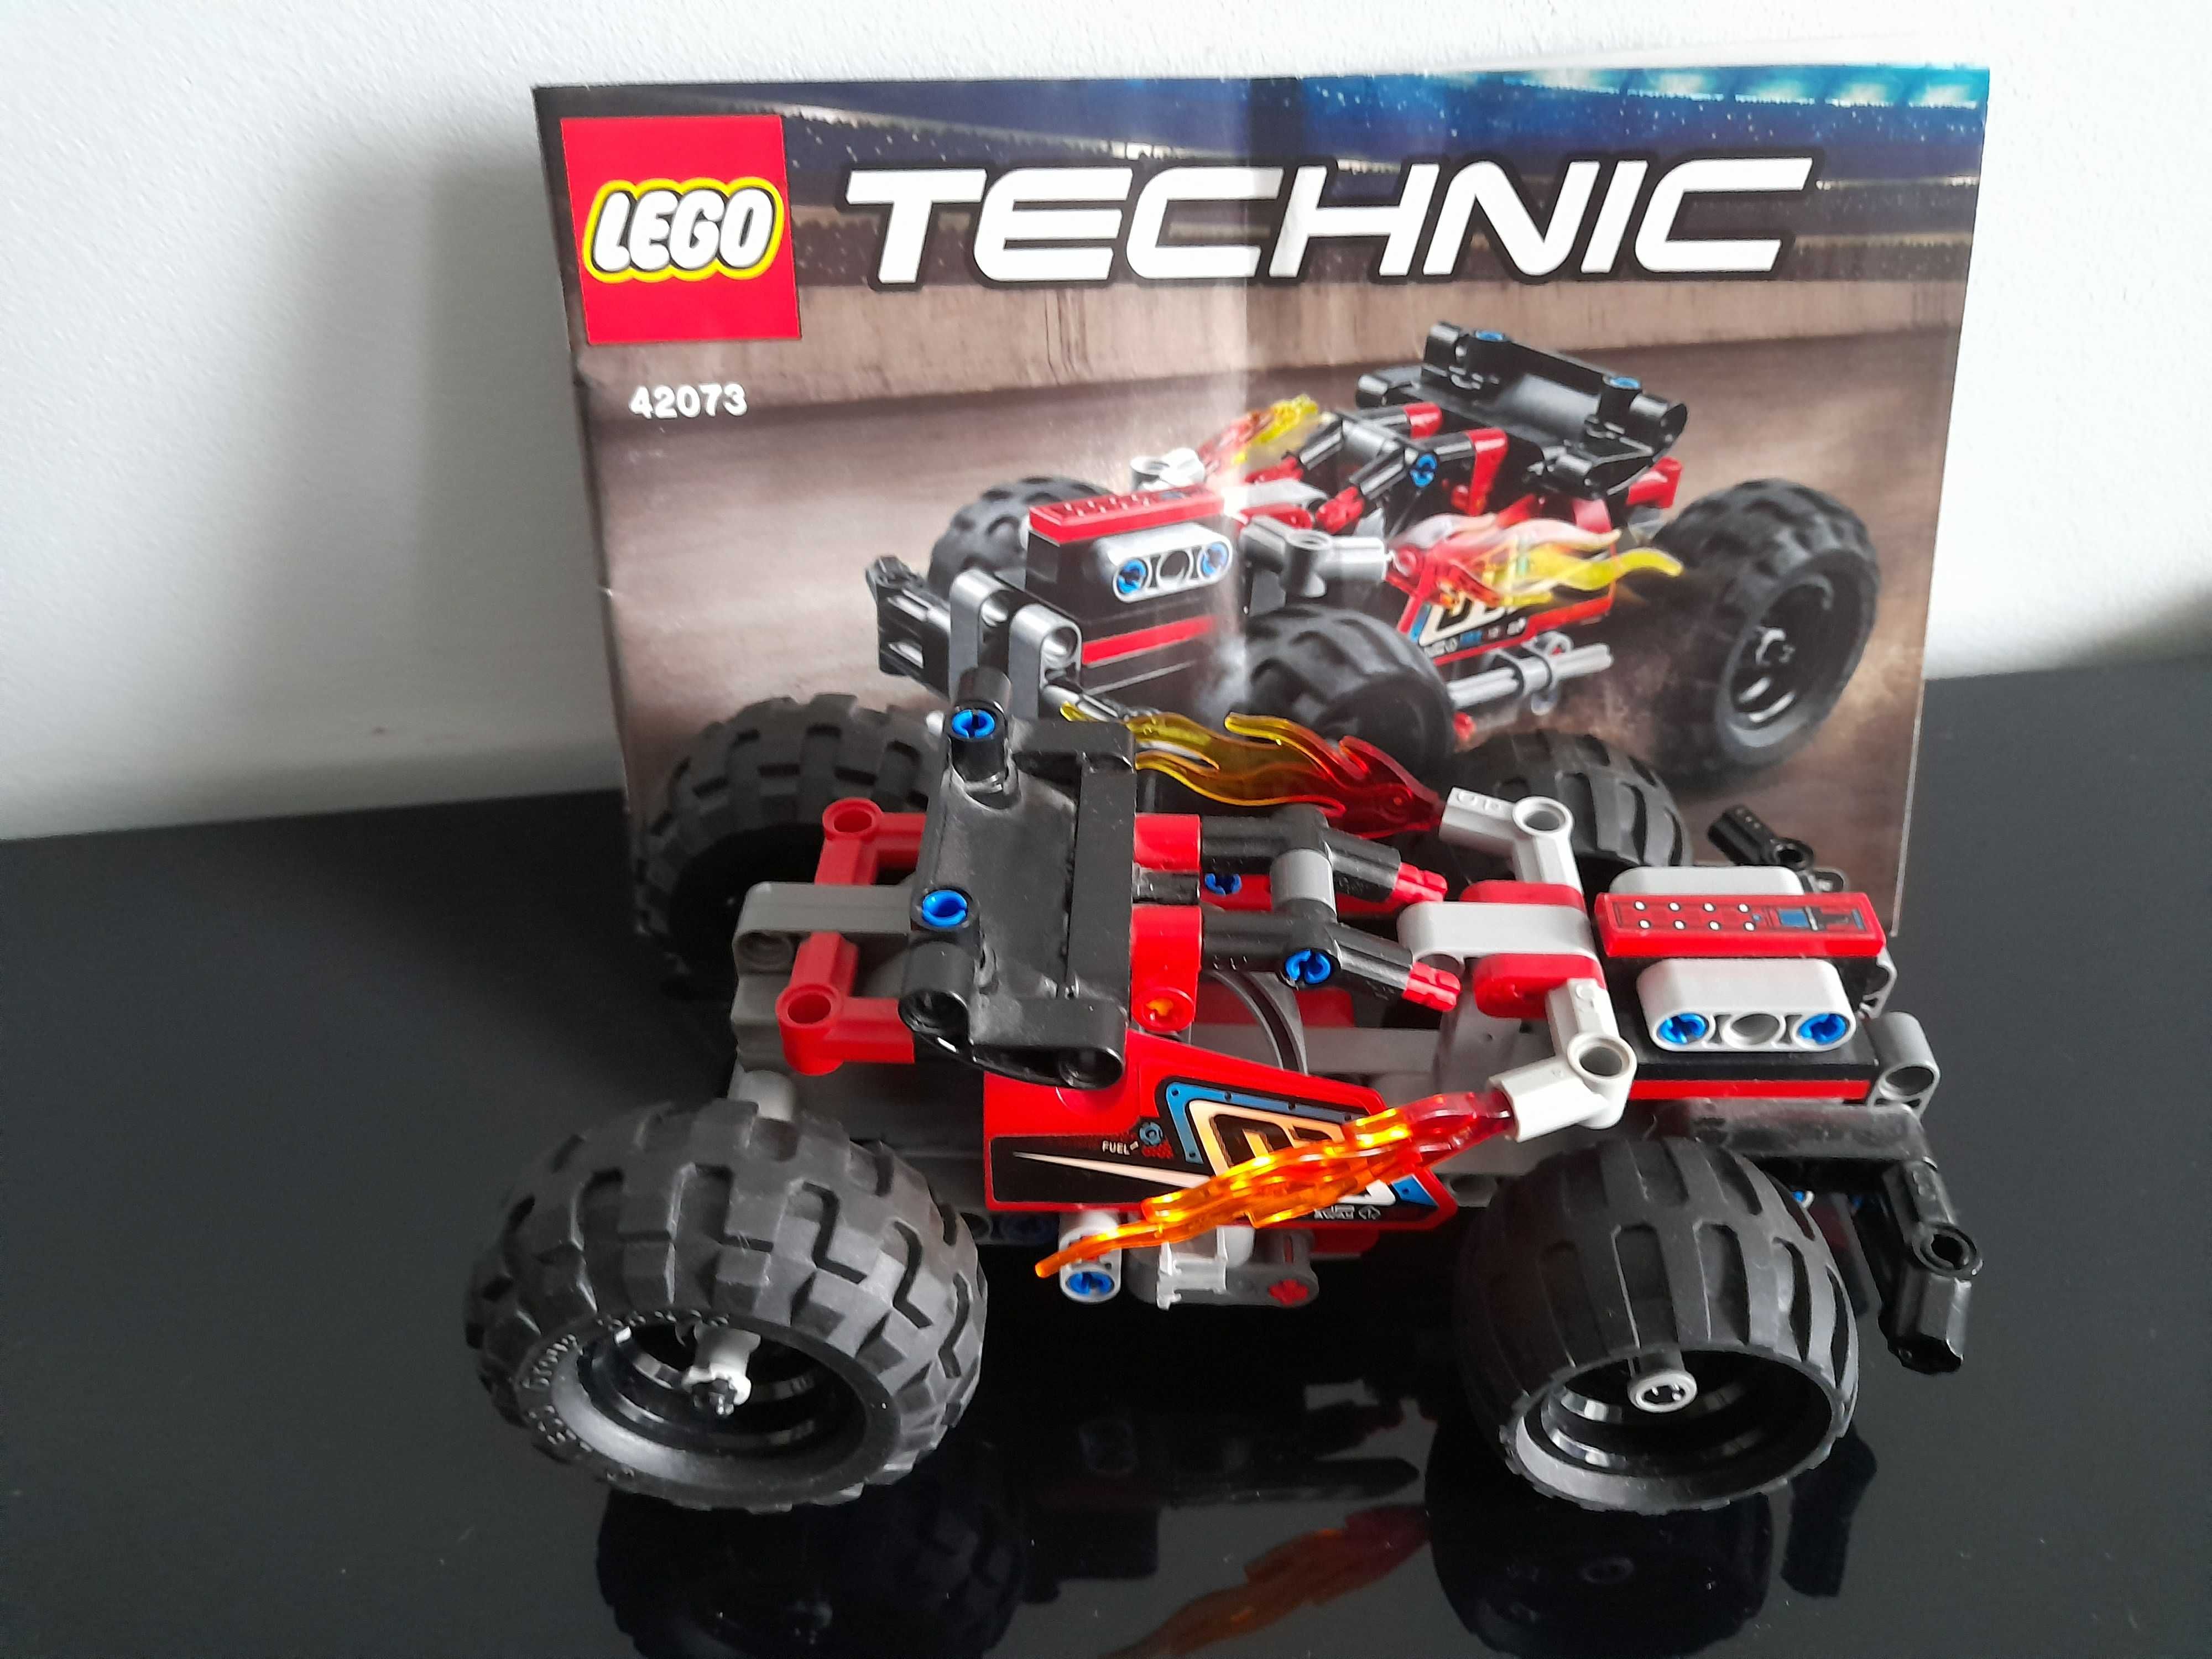 Lego Technik 42073 Wyścigówka - zestaw 4